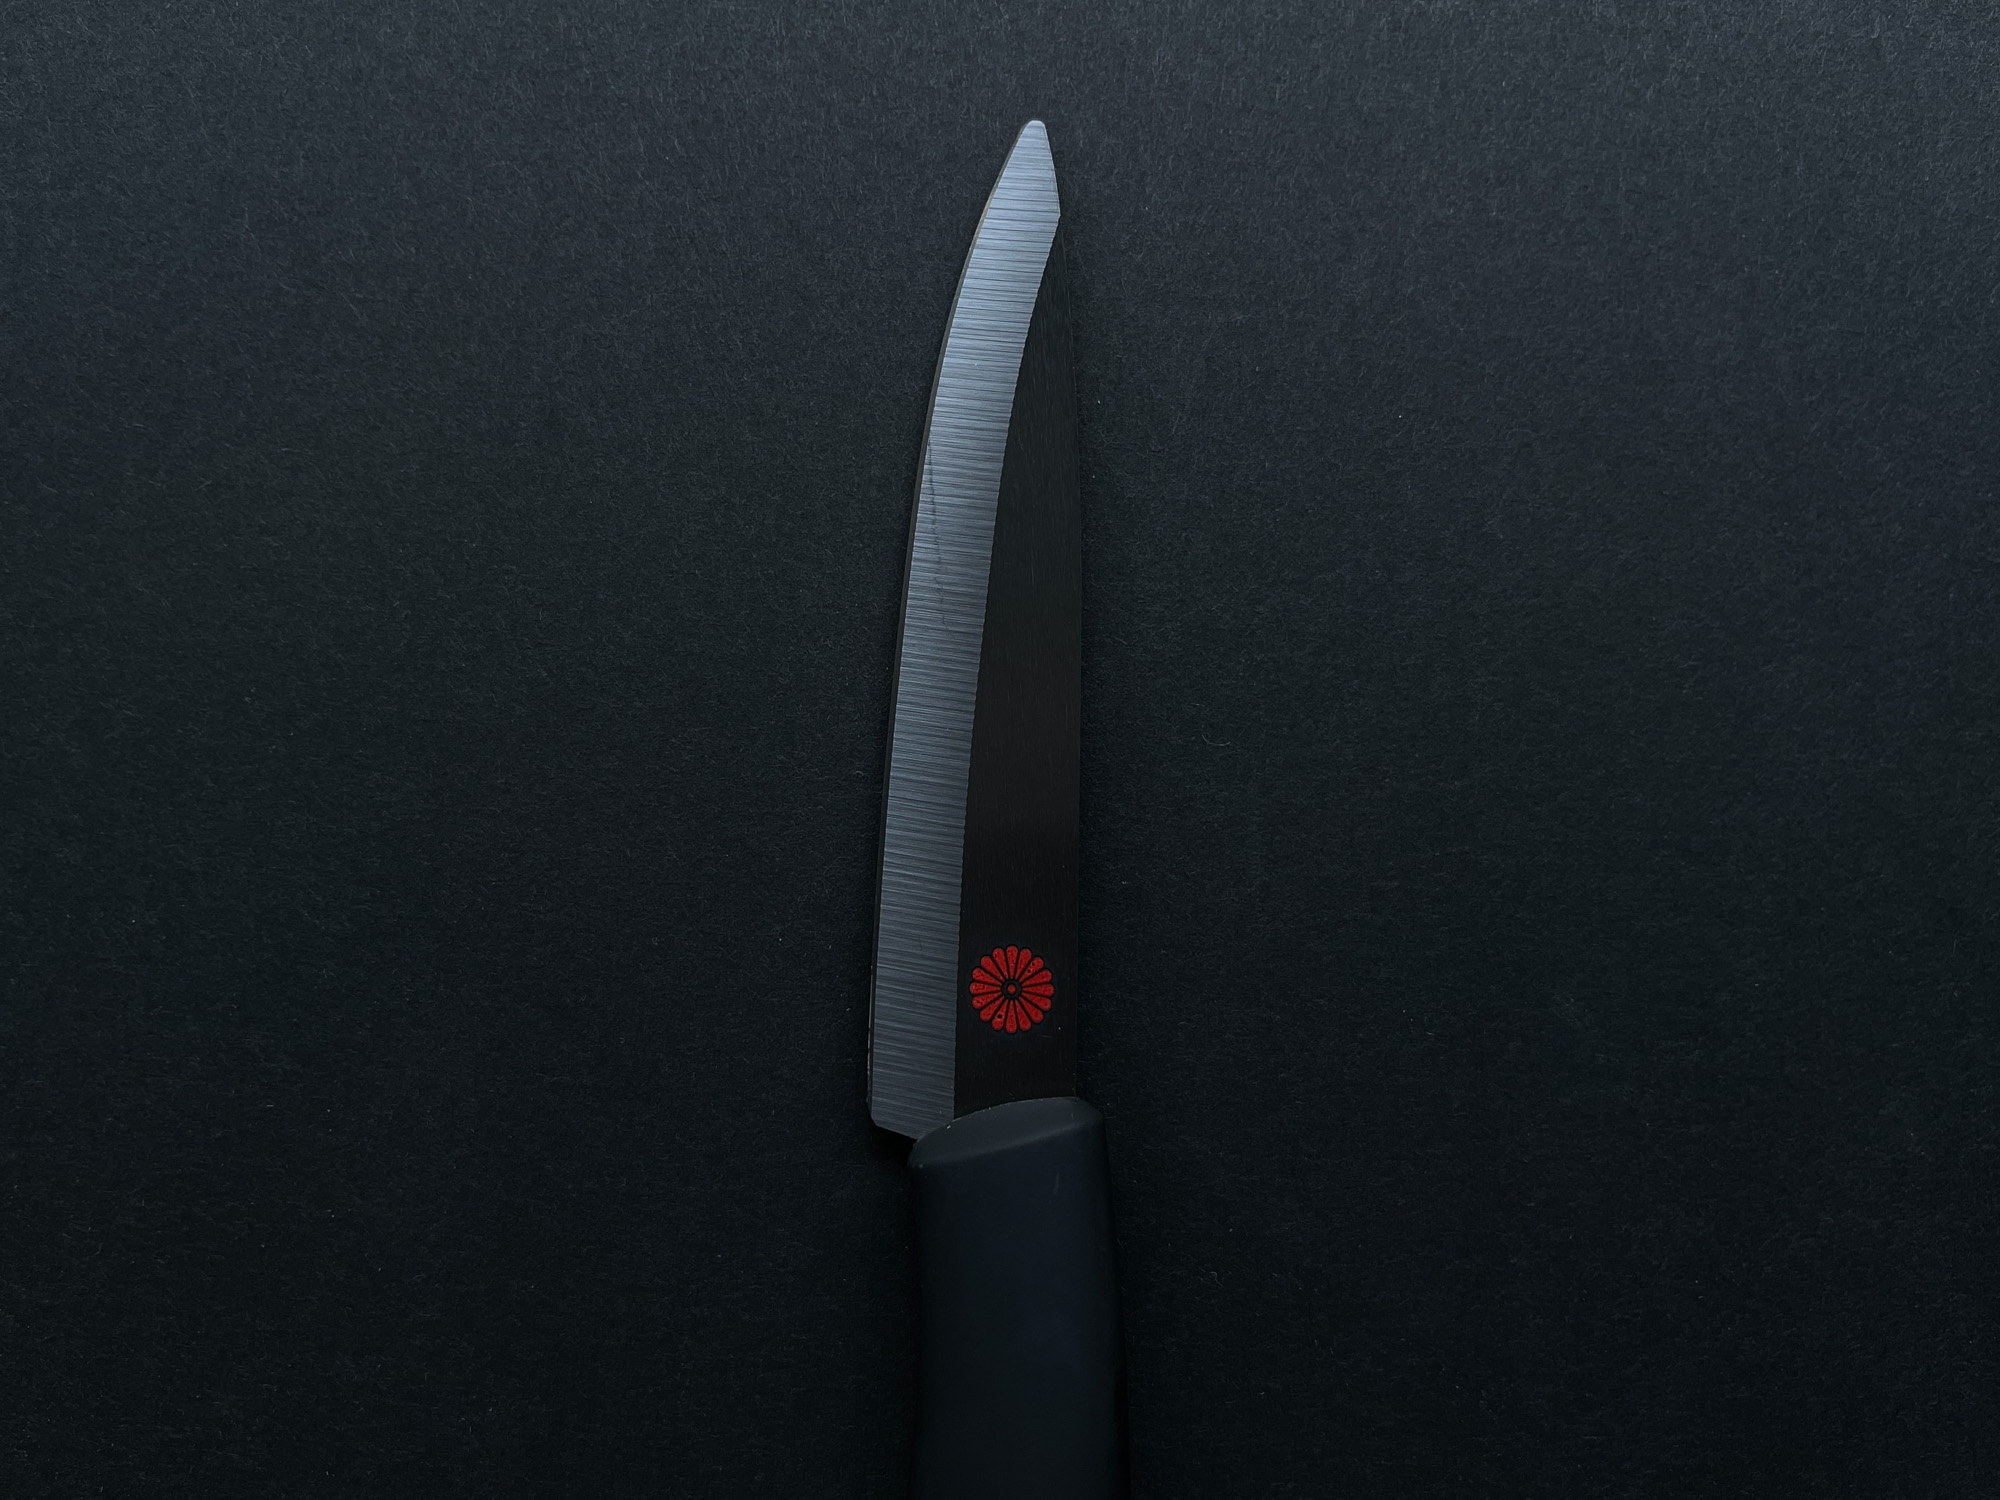 Kikusumi Black Ceramic Collection 5 Piece Chef Knife Gift Set Bundle - BENI  Red Handle - Kikusumi Knife SHOP